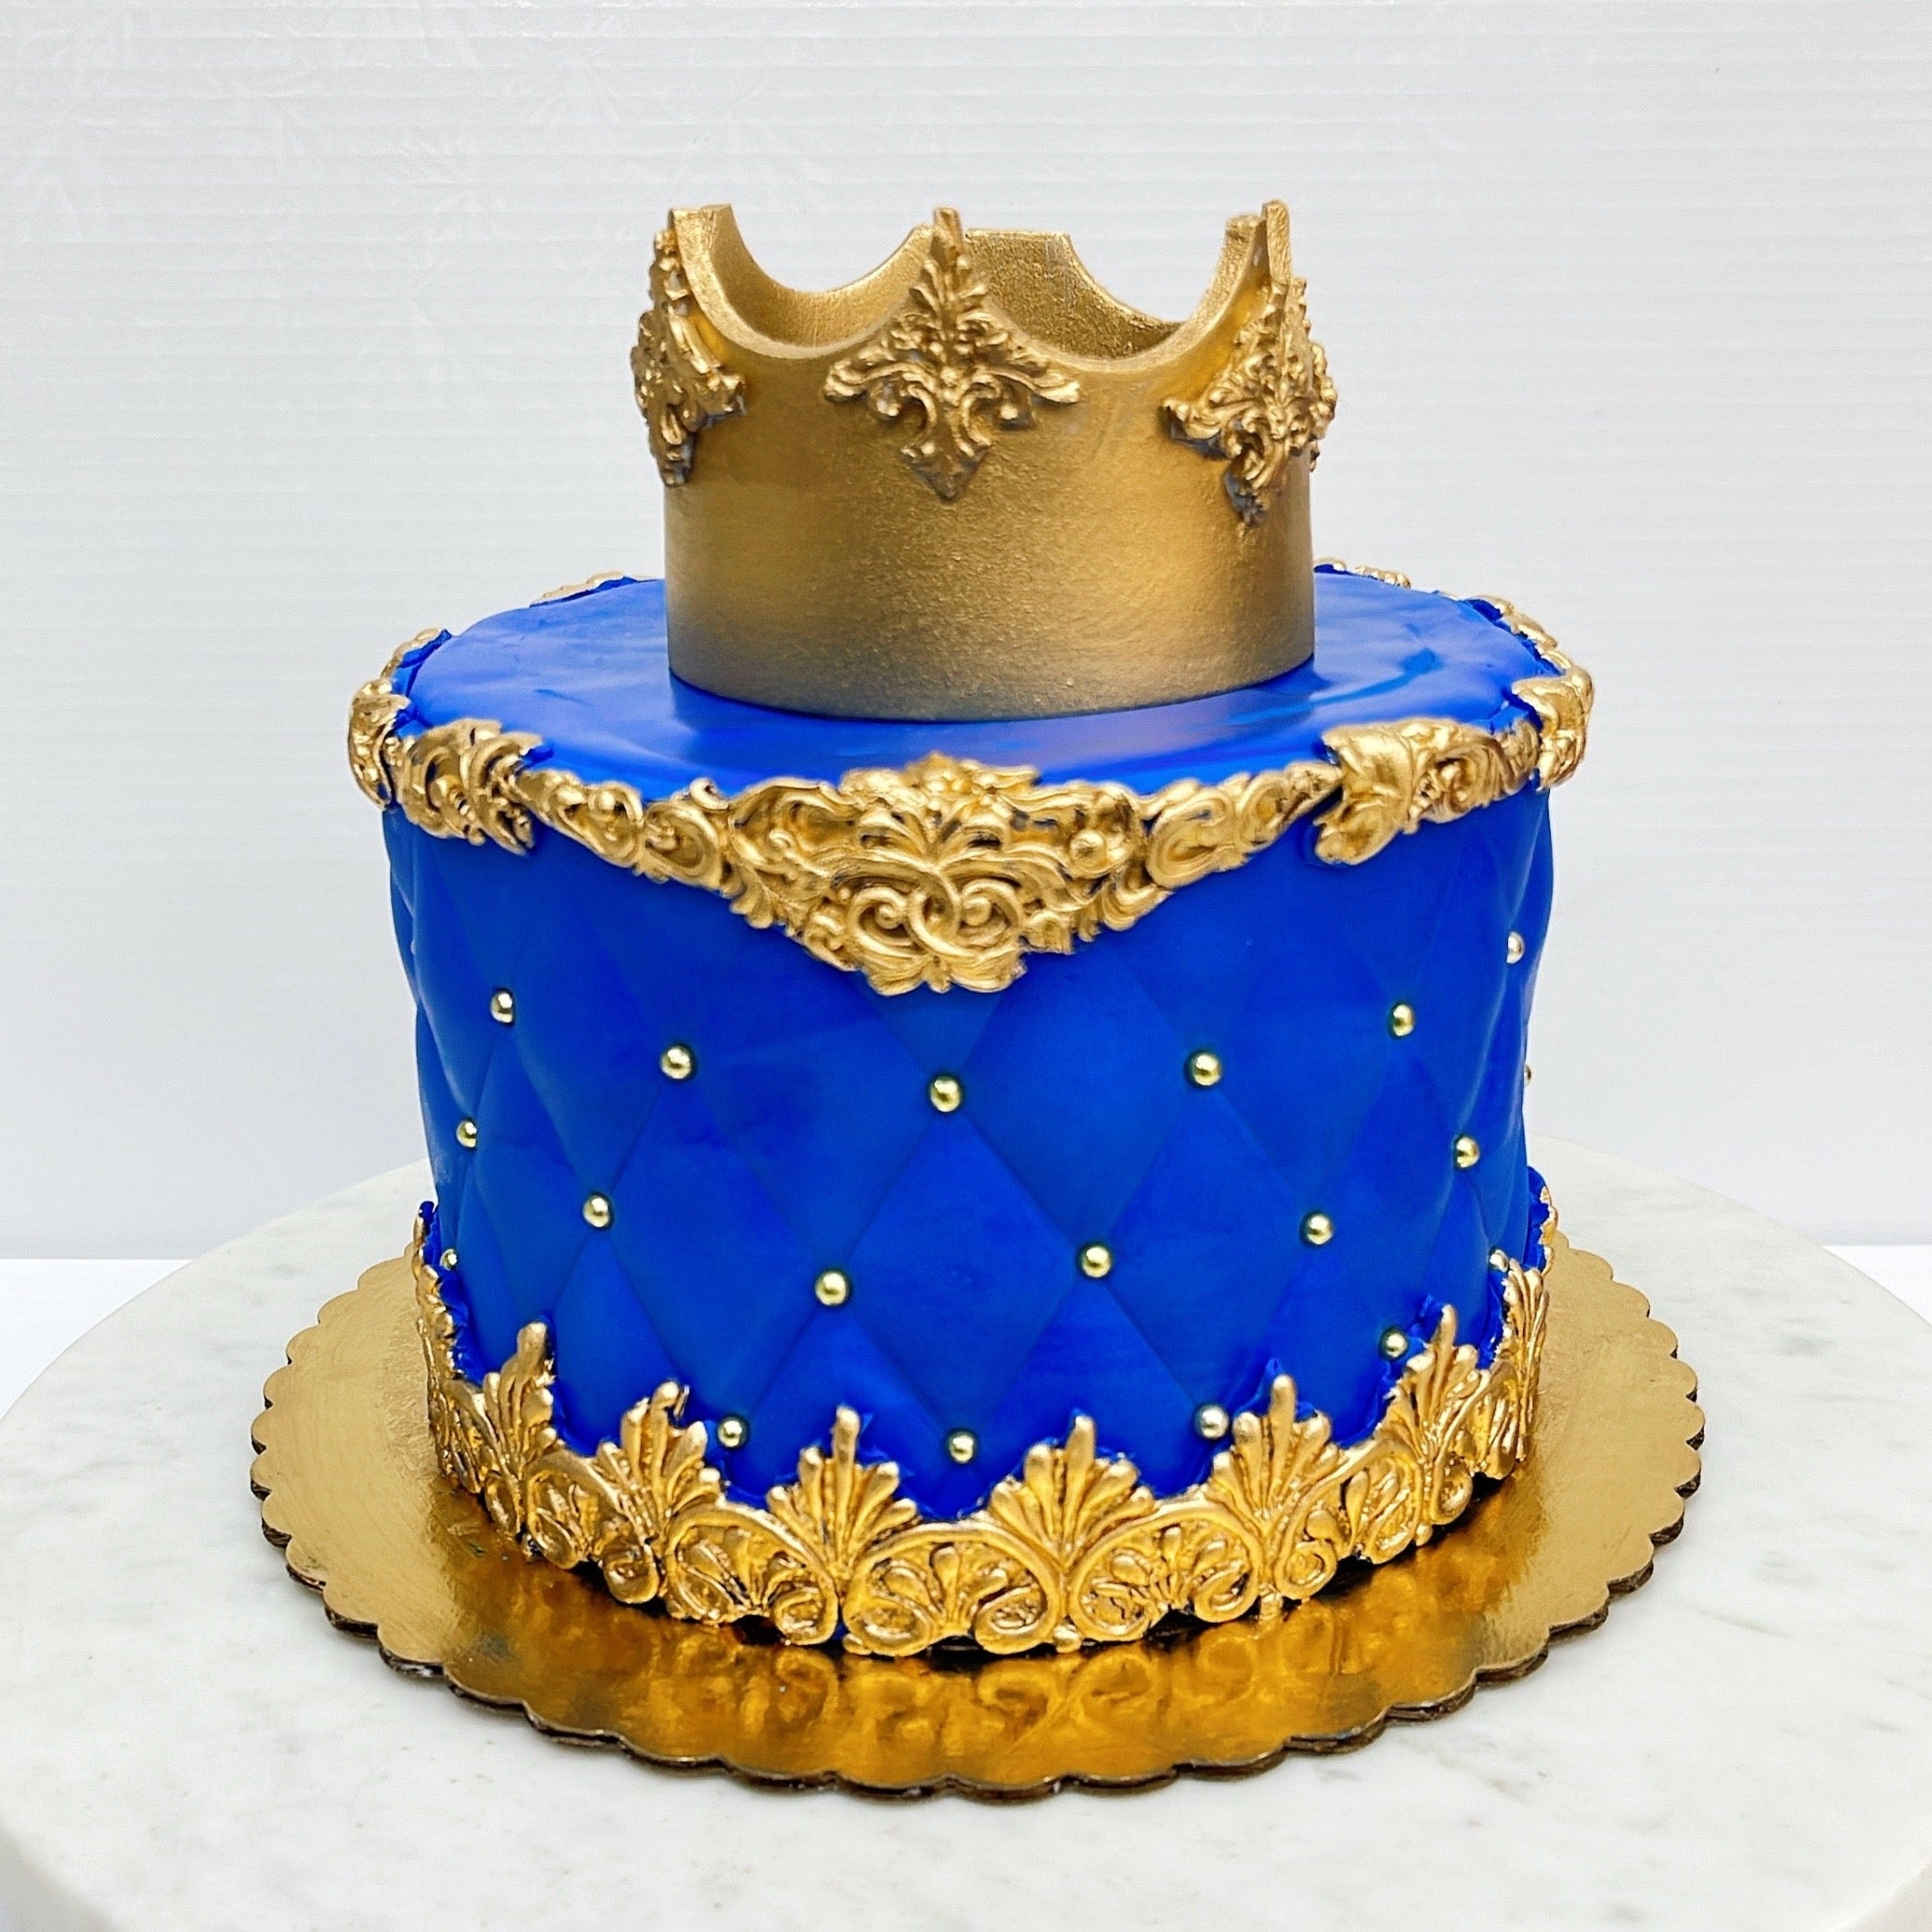 Prince Fondant Cake